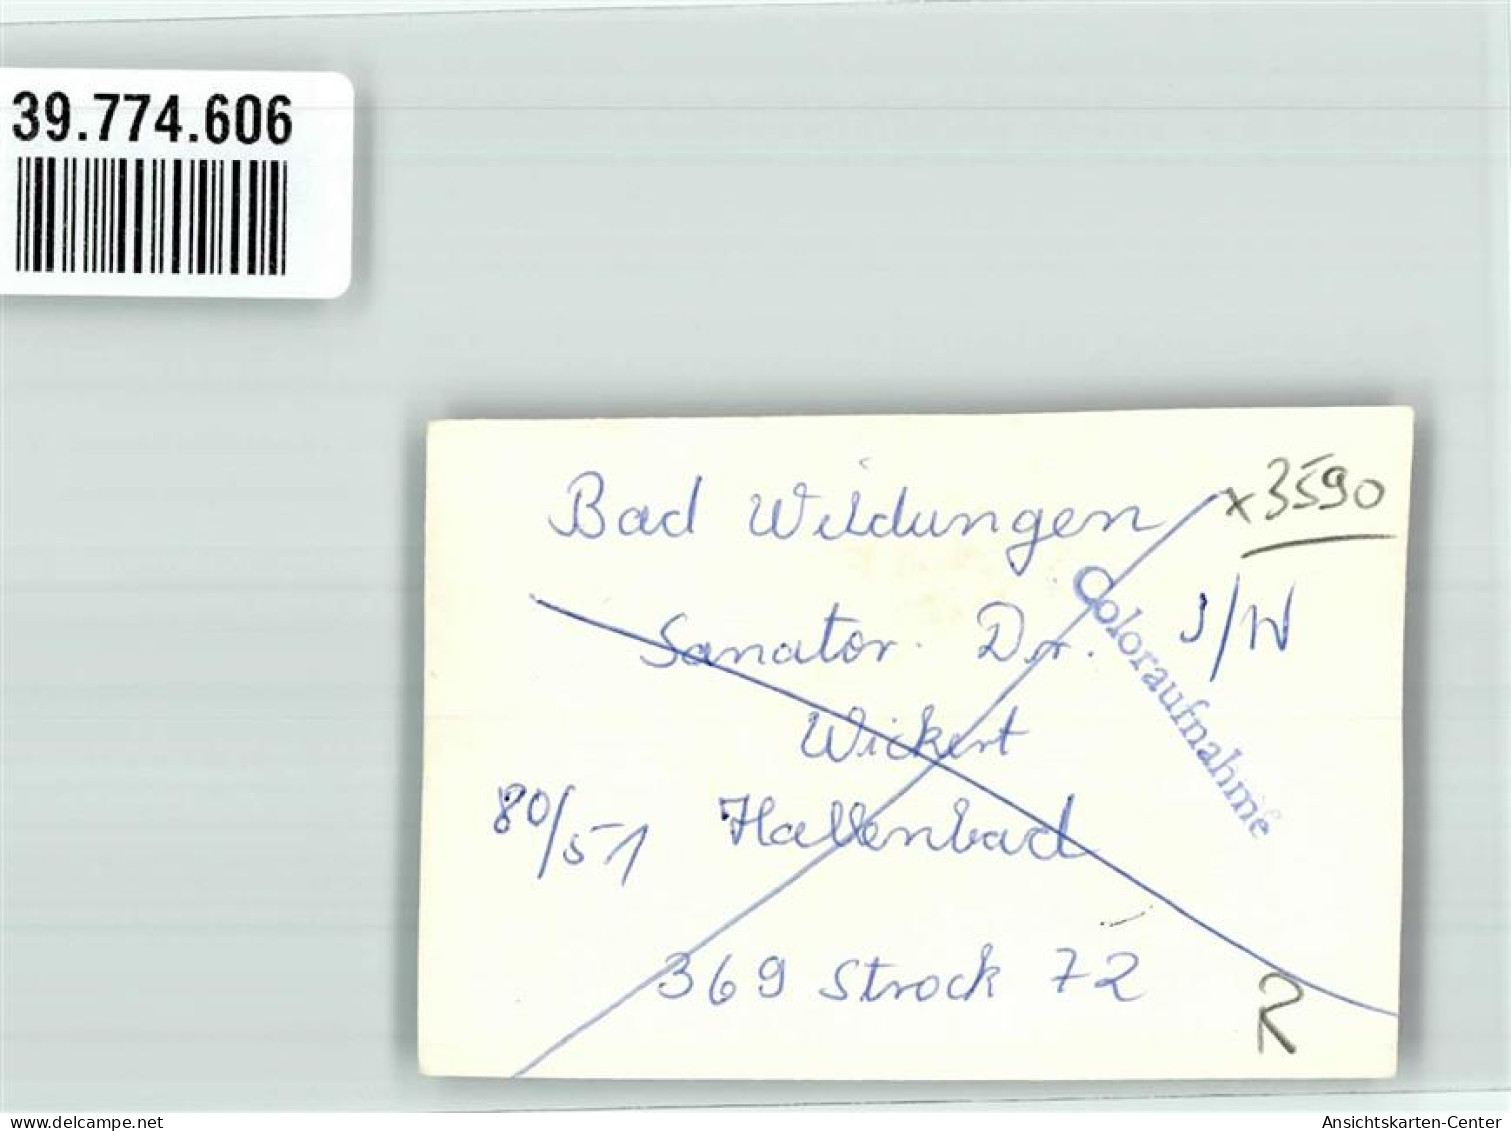 39774606 - Bad Wildungen - Bad Wildungen